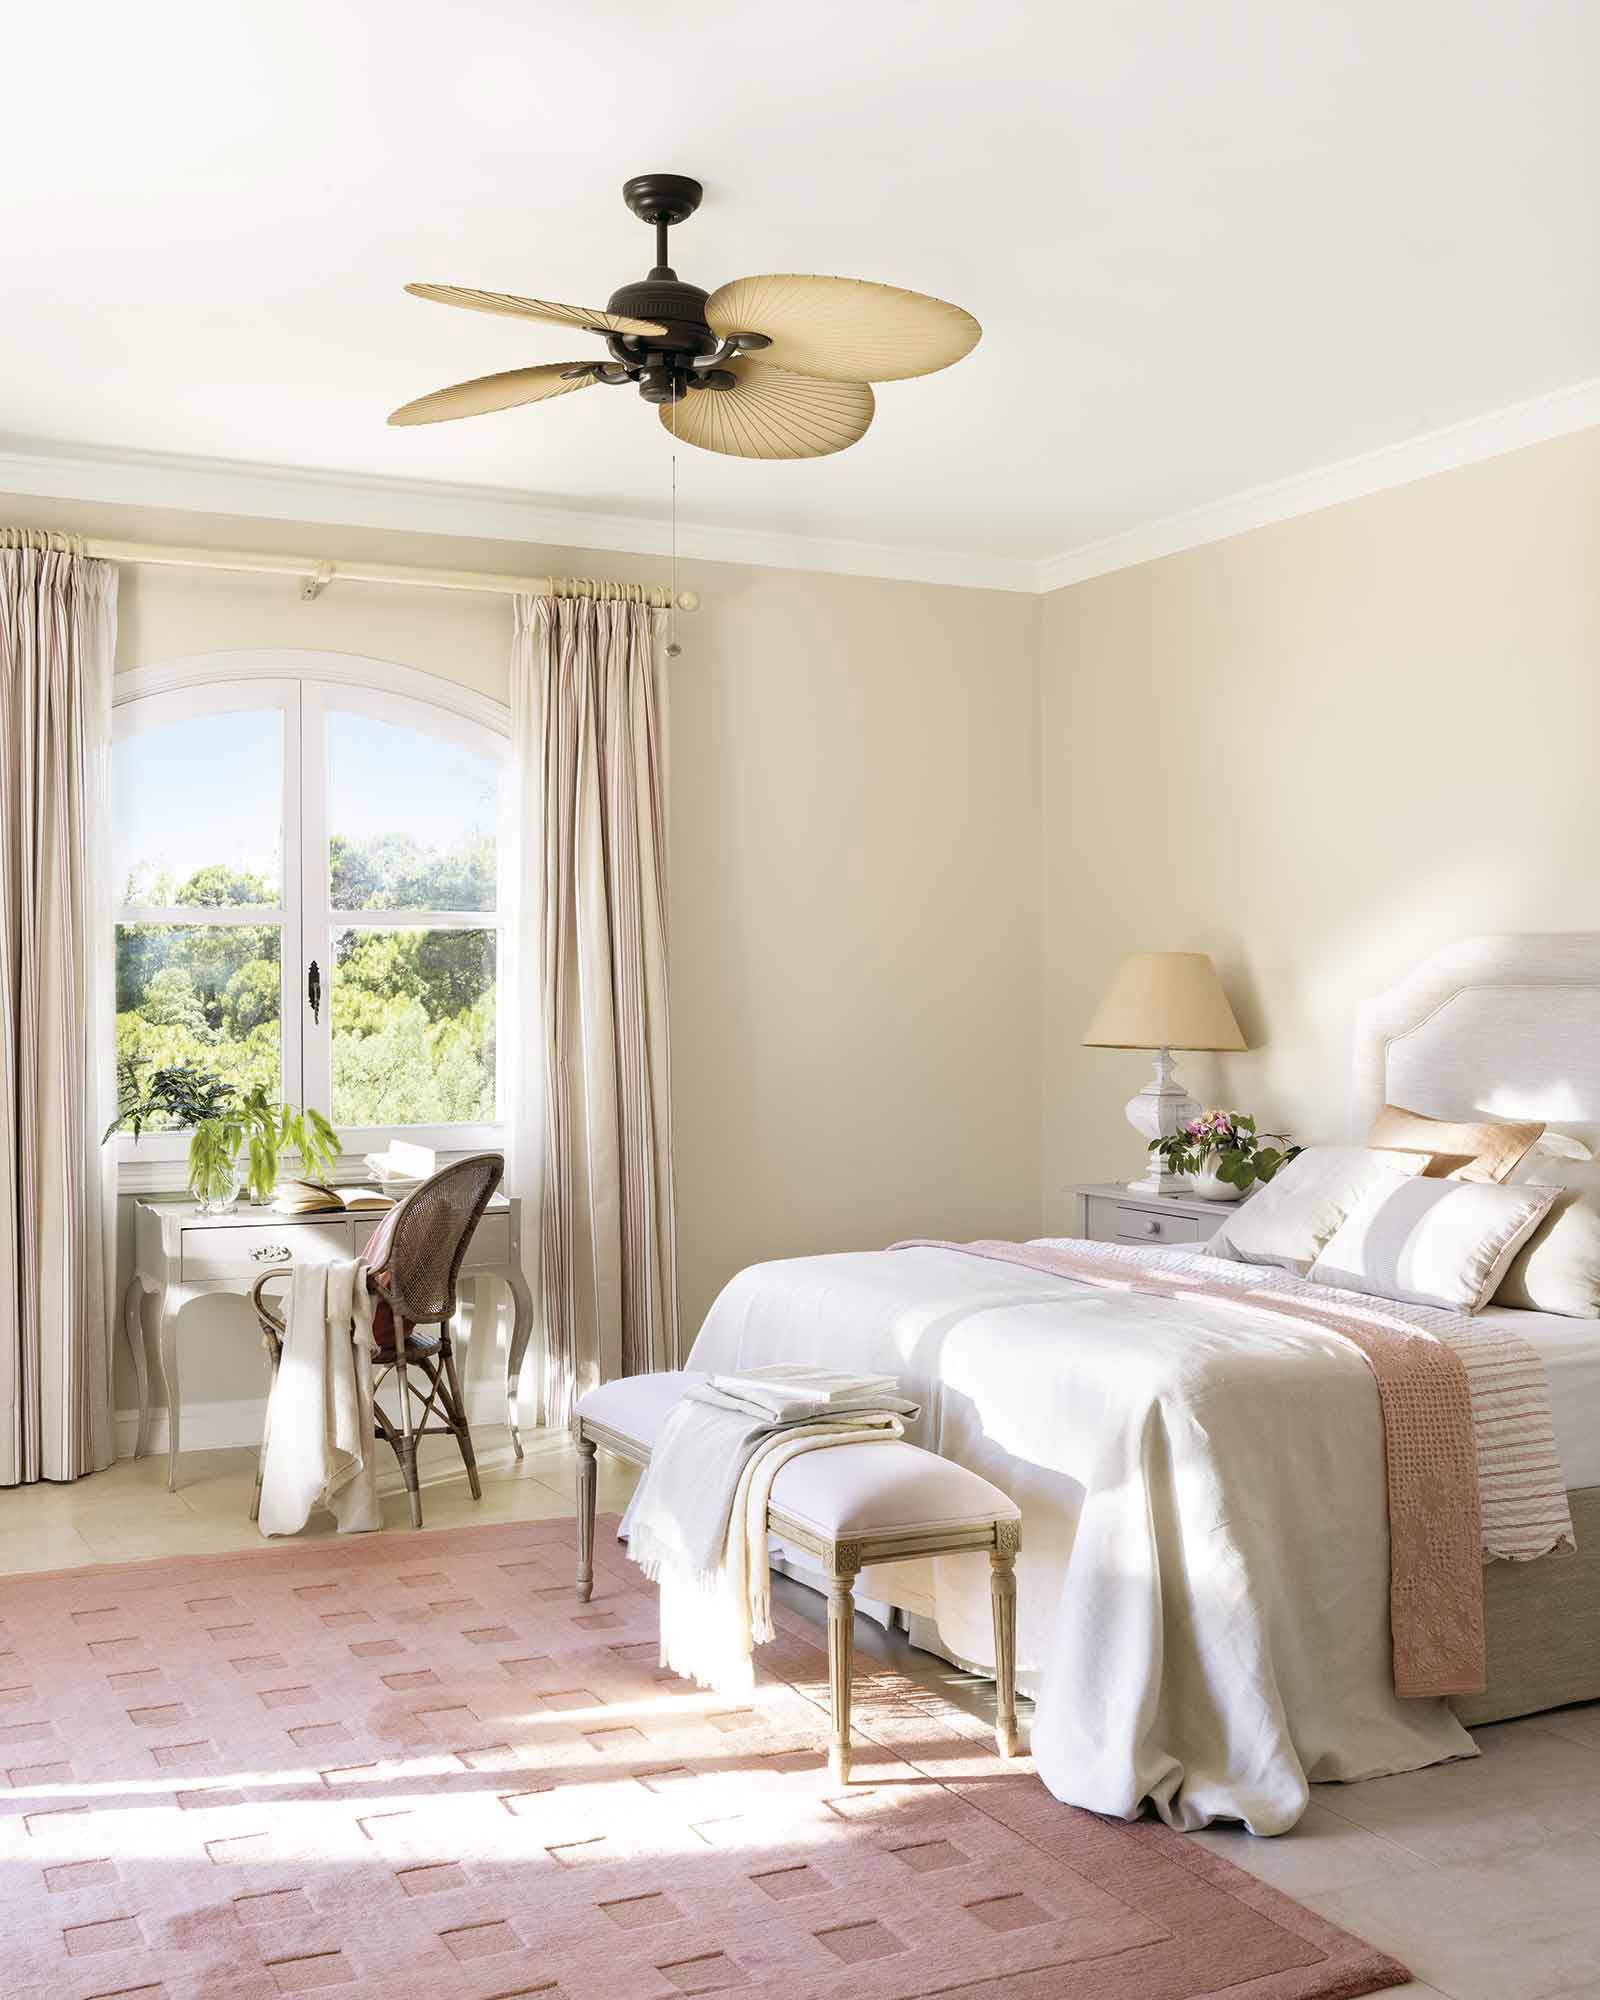 Dormitorio de estilo romántico donde predomina el rosa pastel.